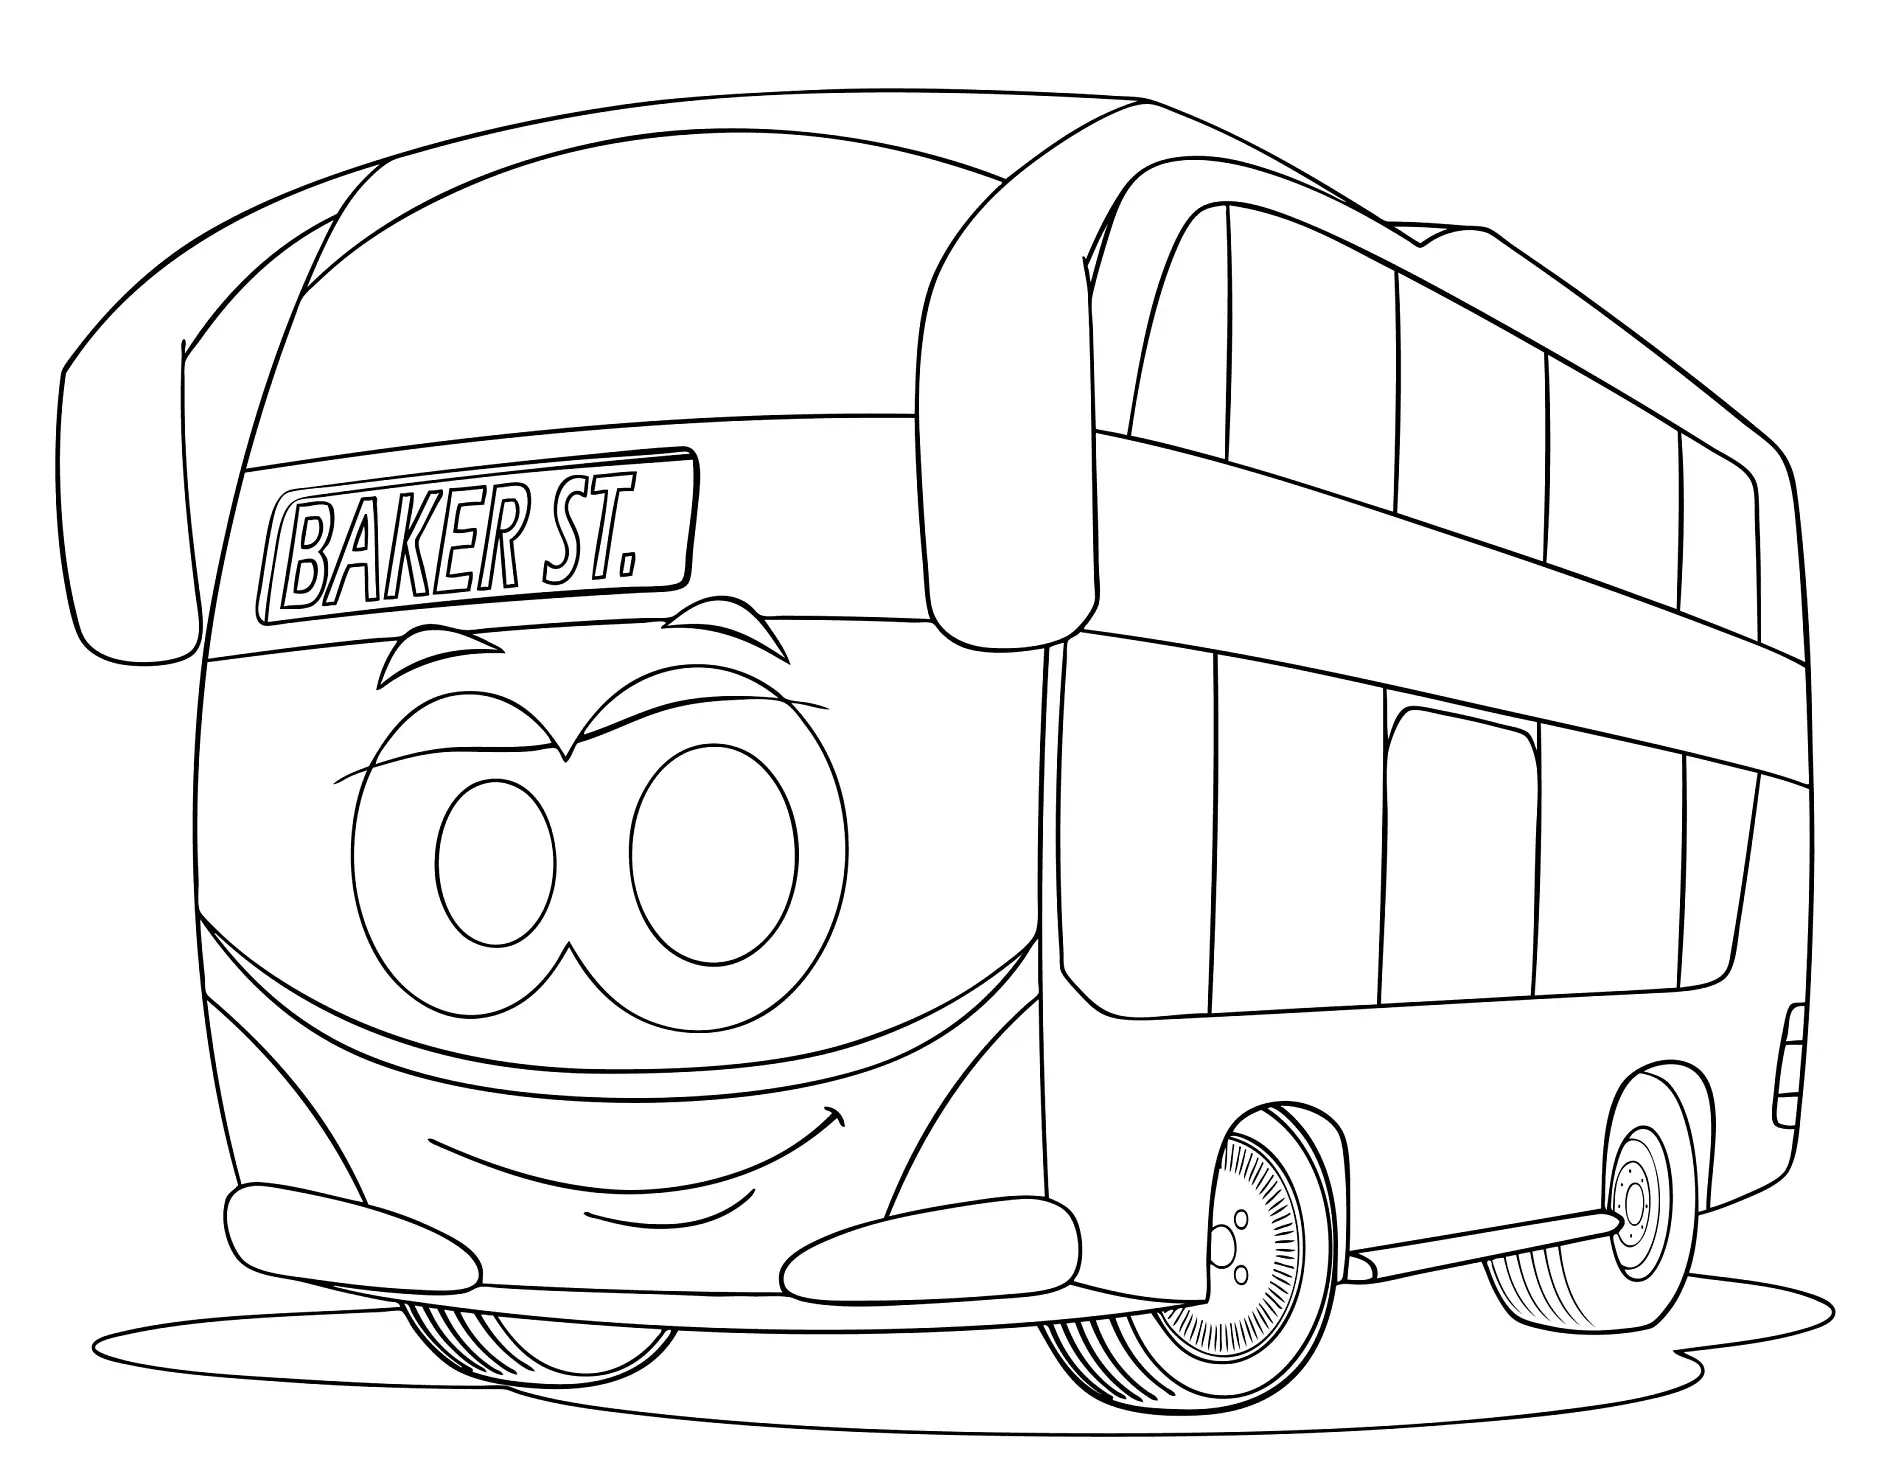 Ausmalbild Bus mit freundlichem Gesicht und Ziel Baker Street